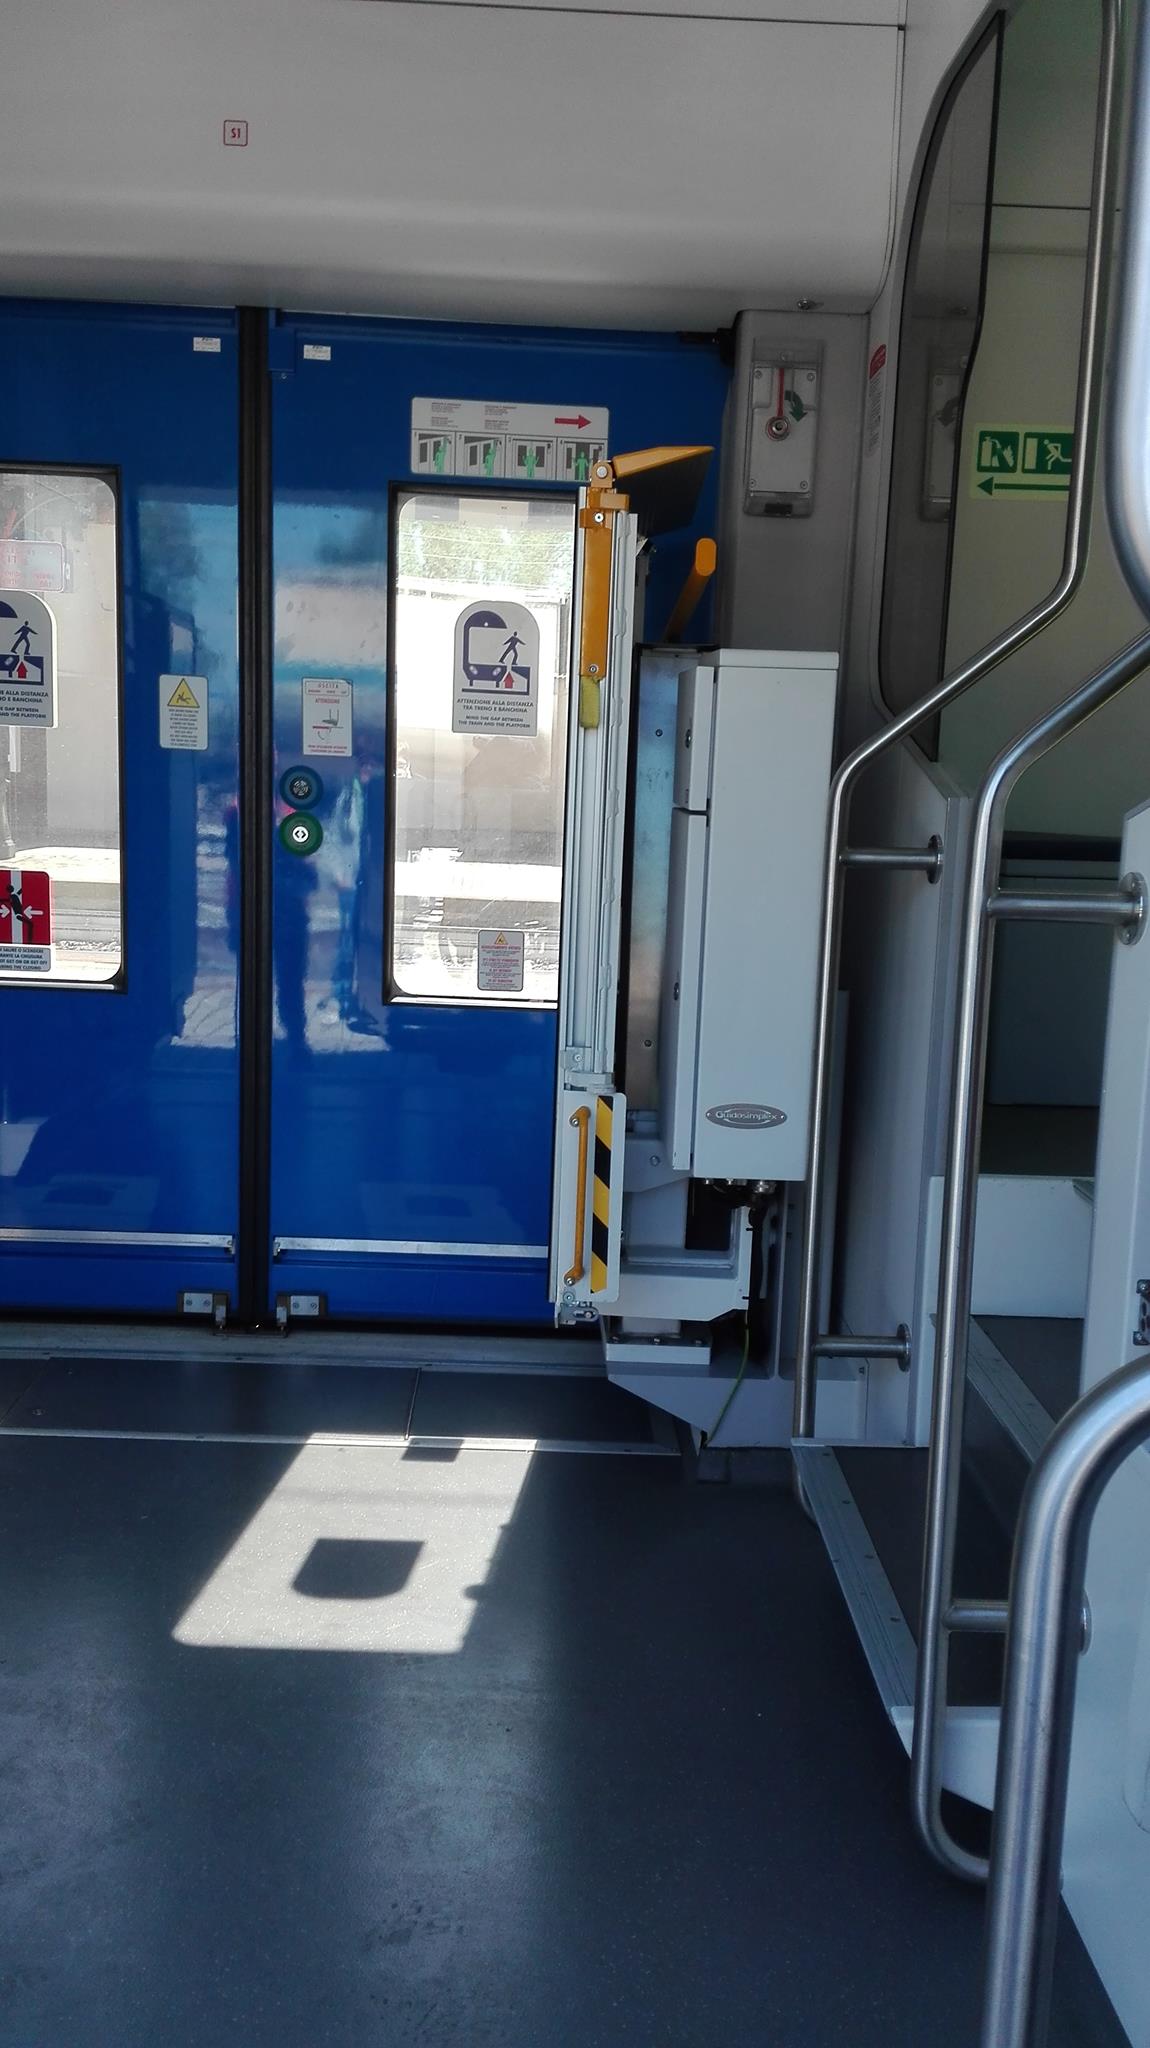 pedana per disabili installata su un treno ma chiusa